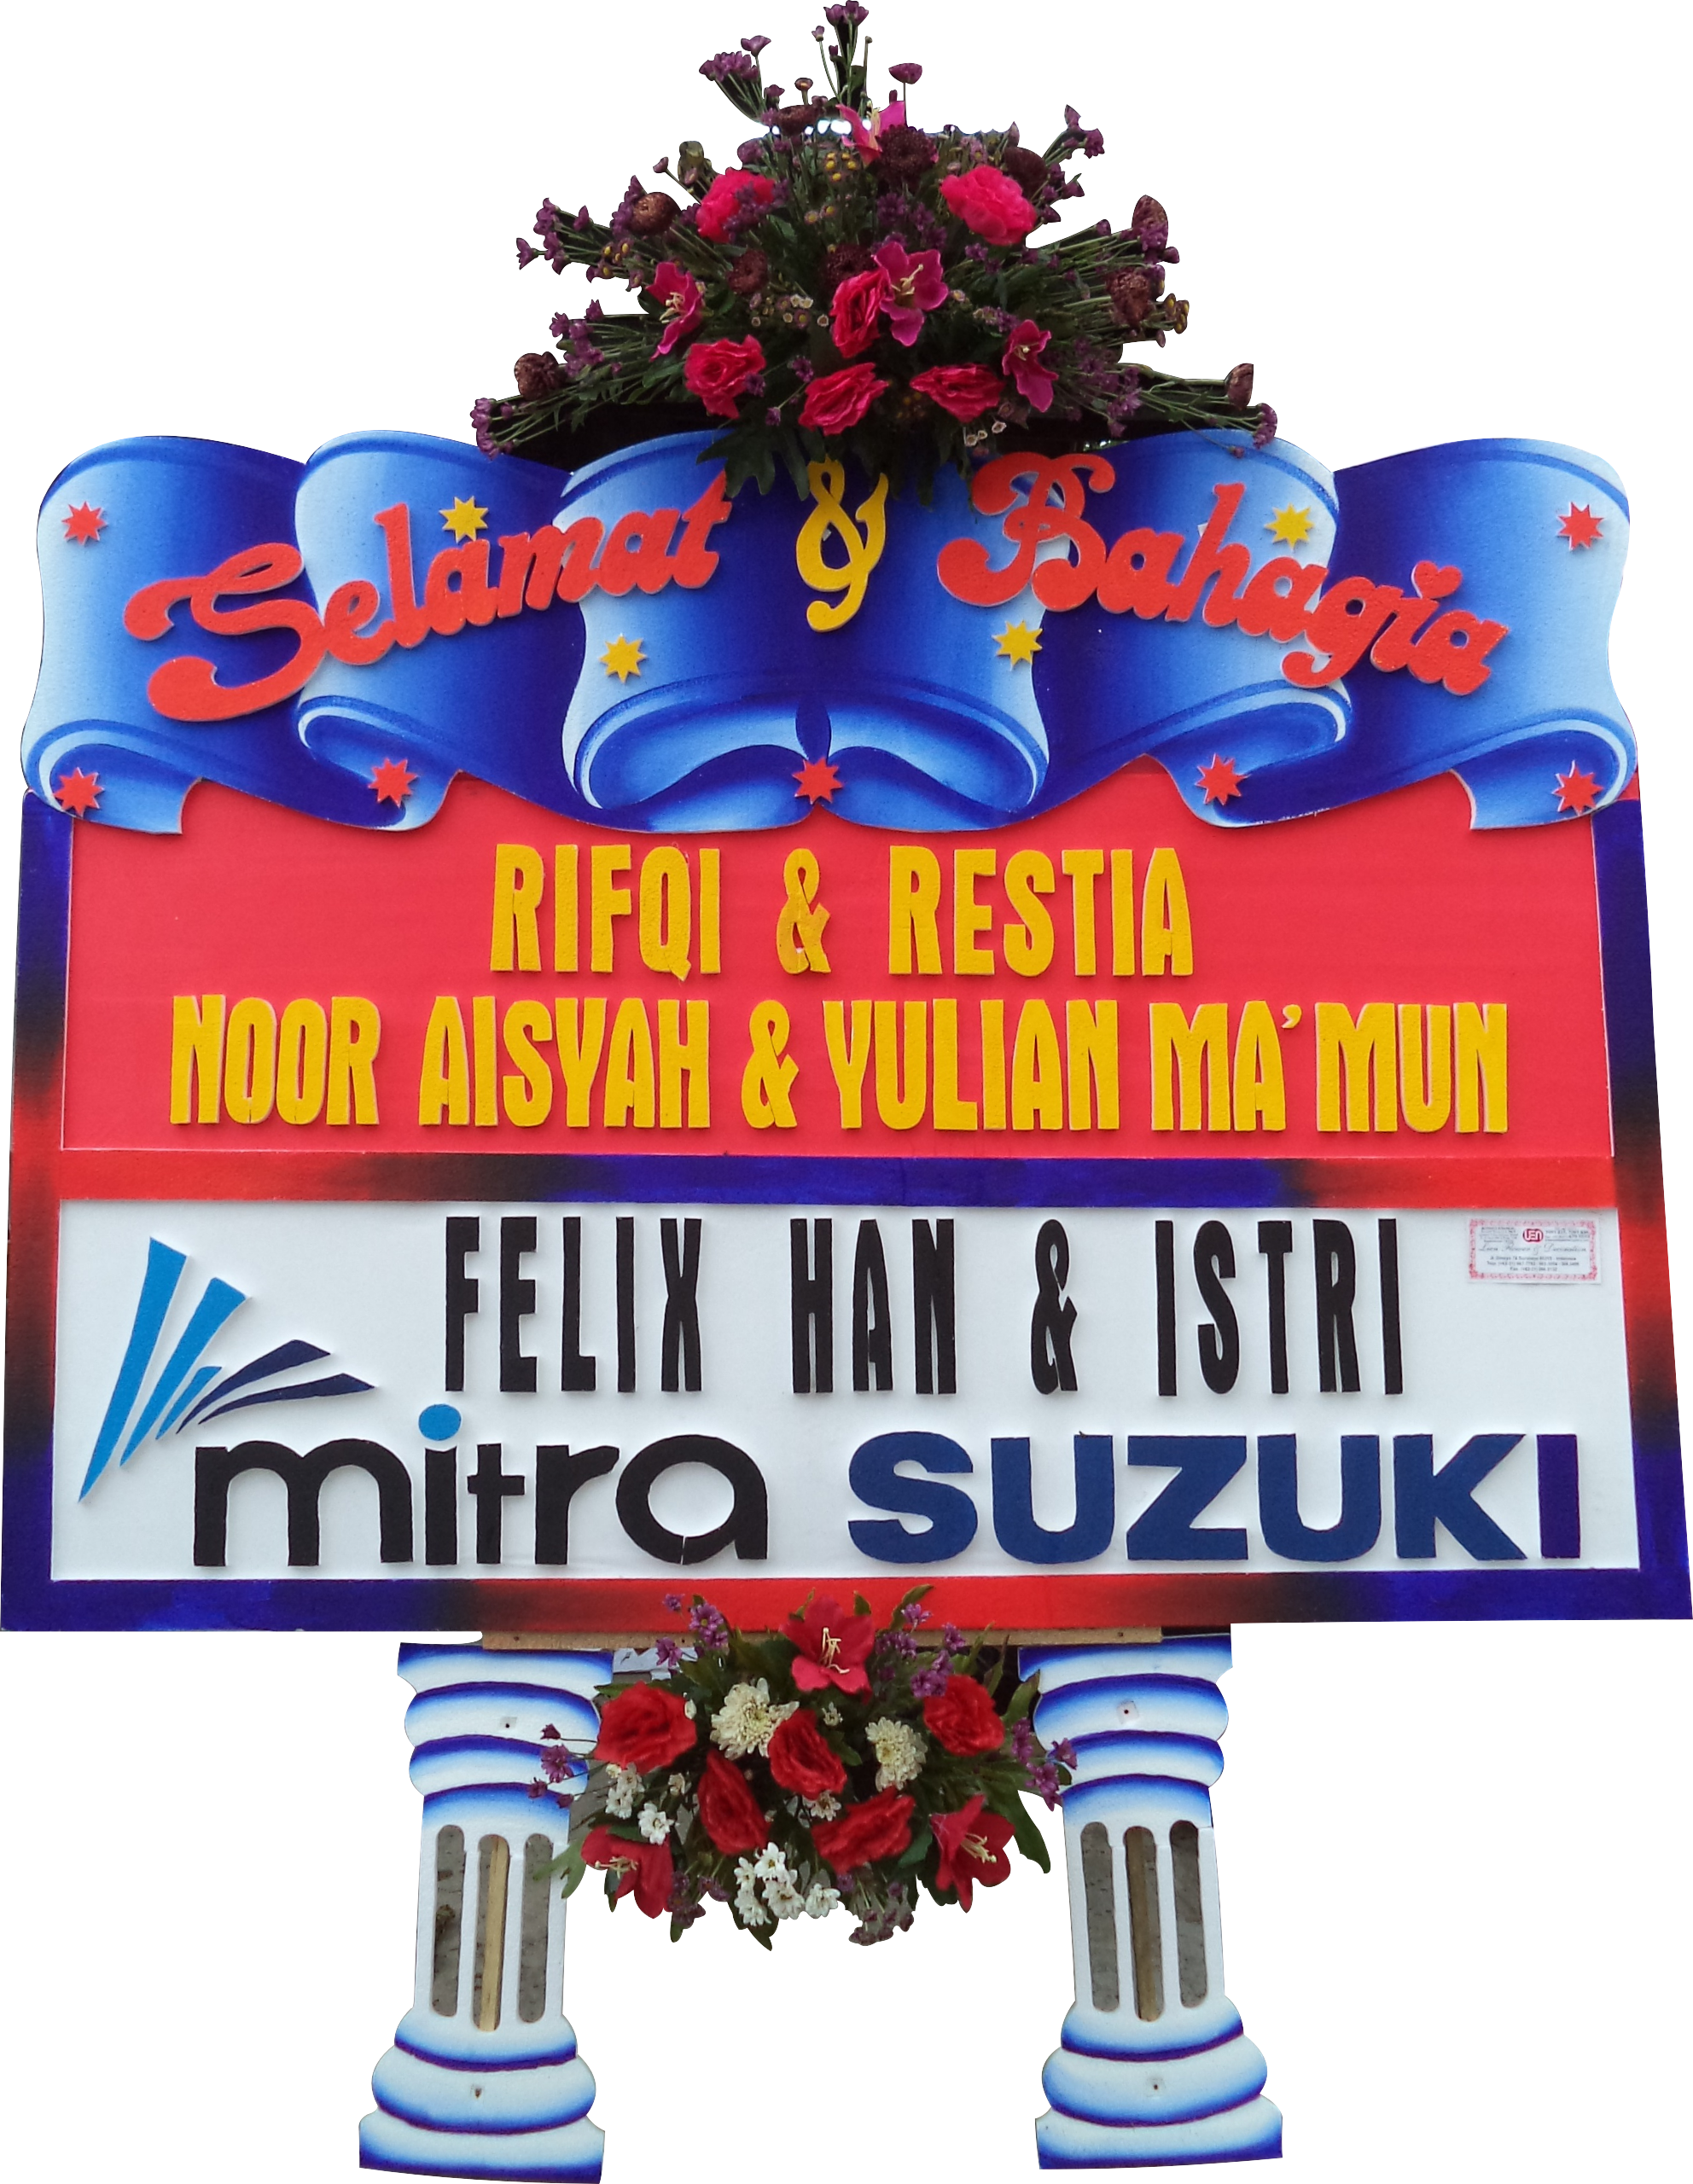 Toko Bunga Lien – Bunga Papan Surabaya dan Banjarmasin 